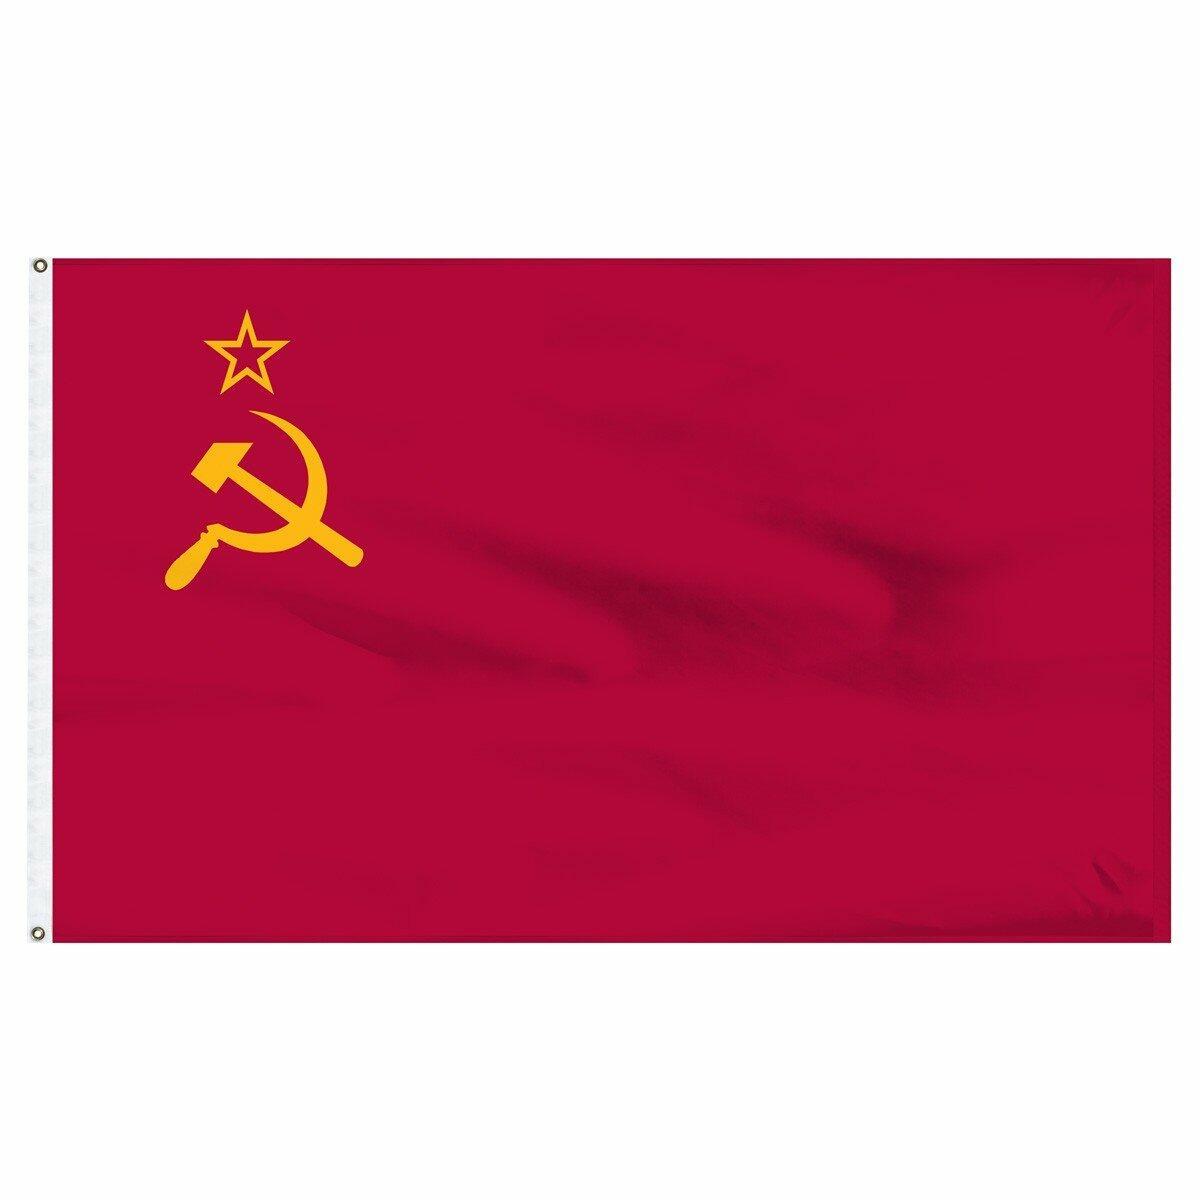 СССР 